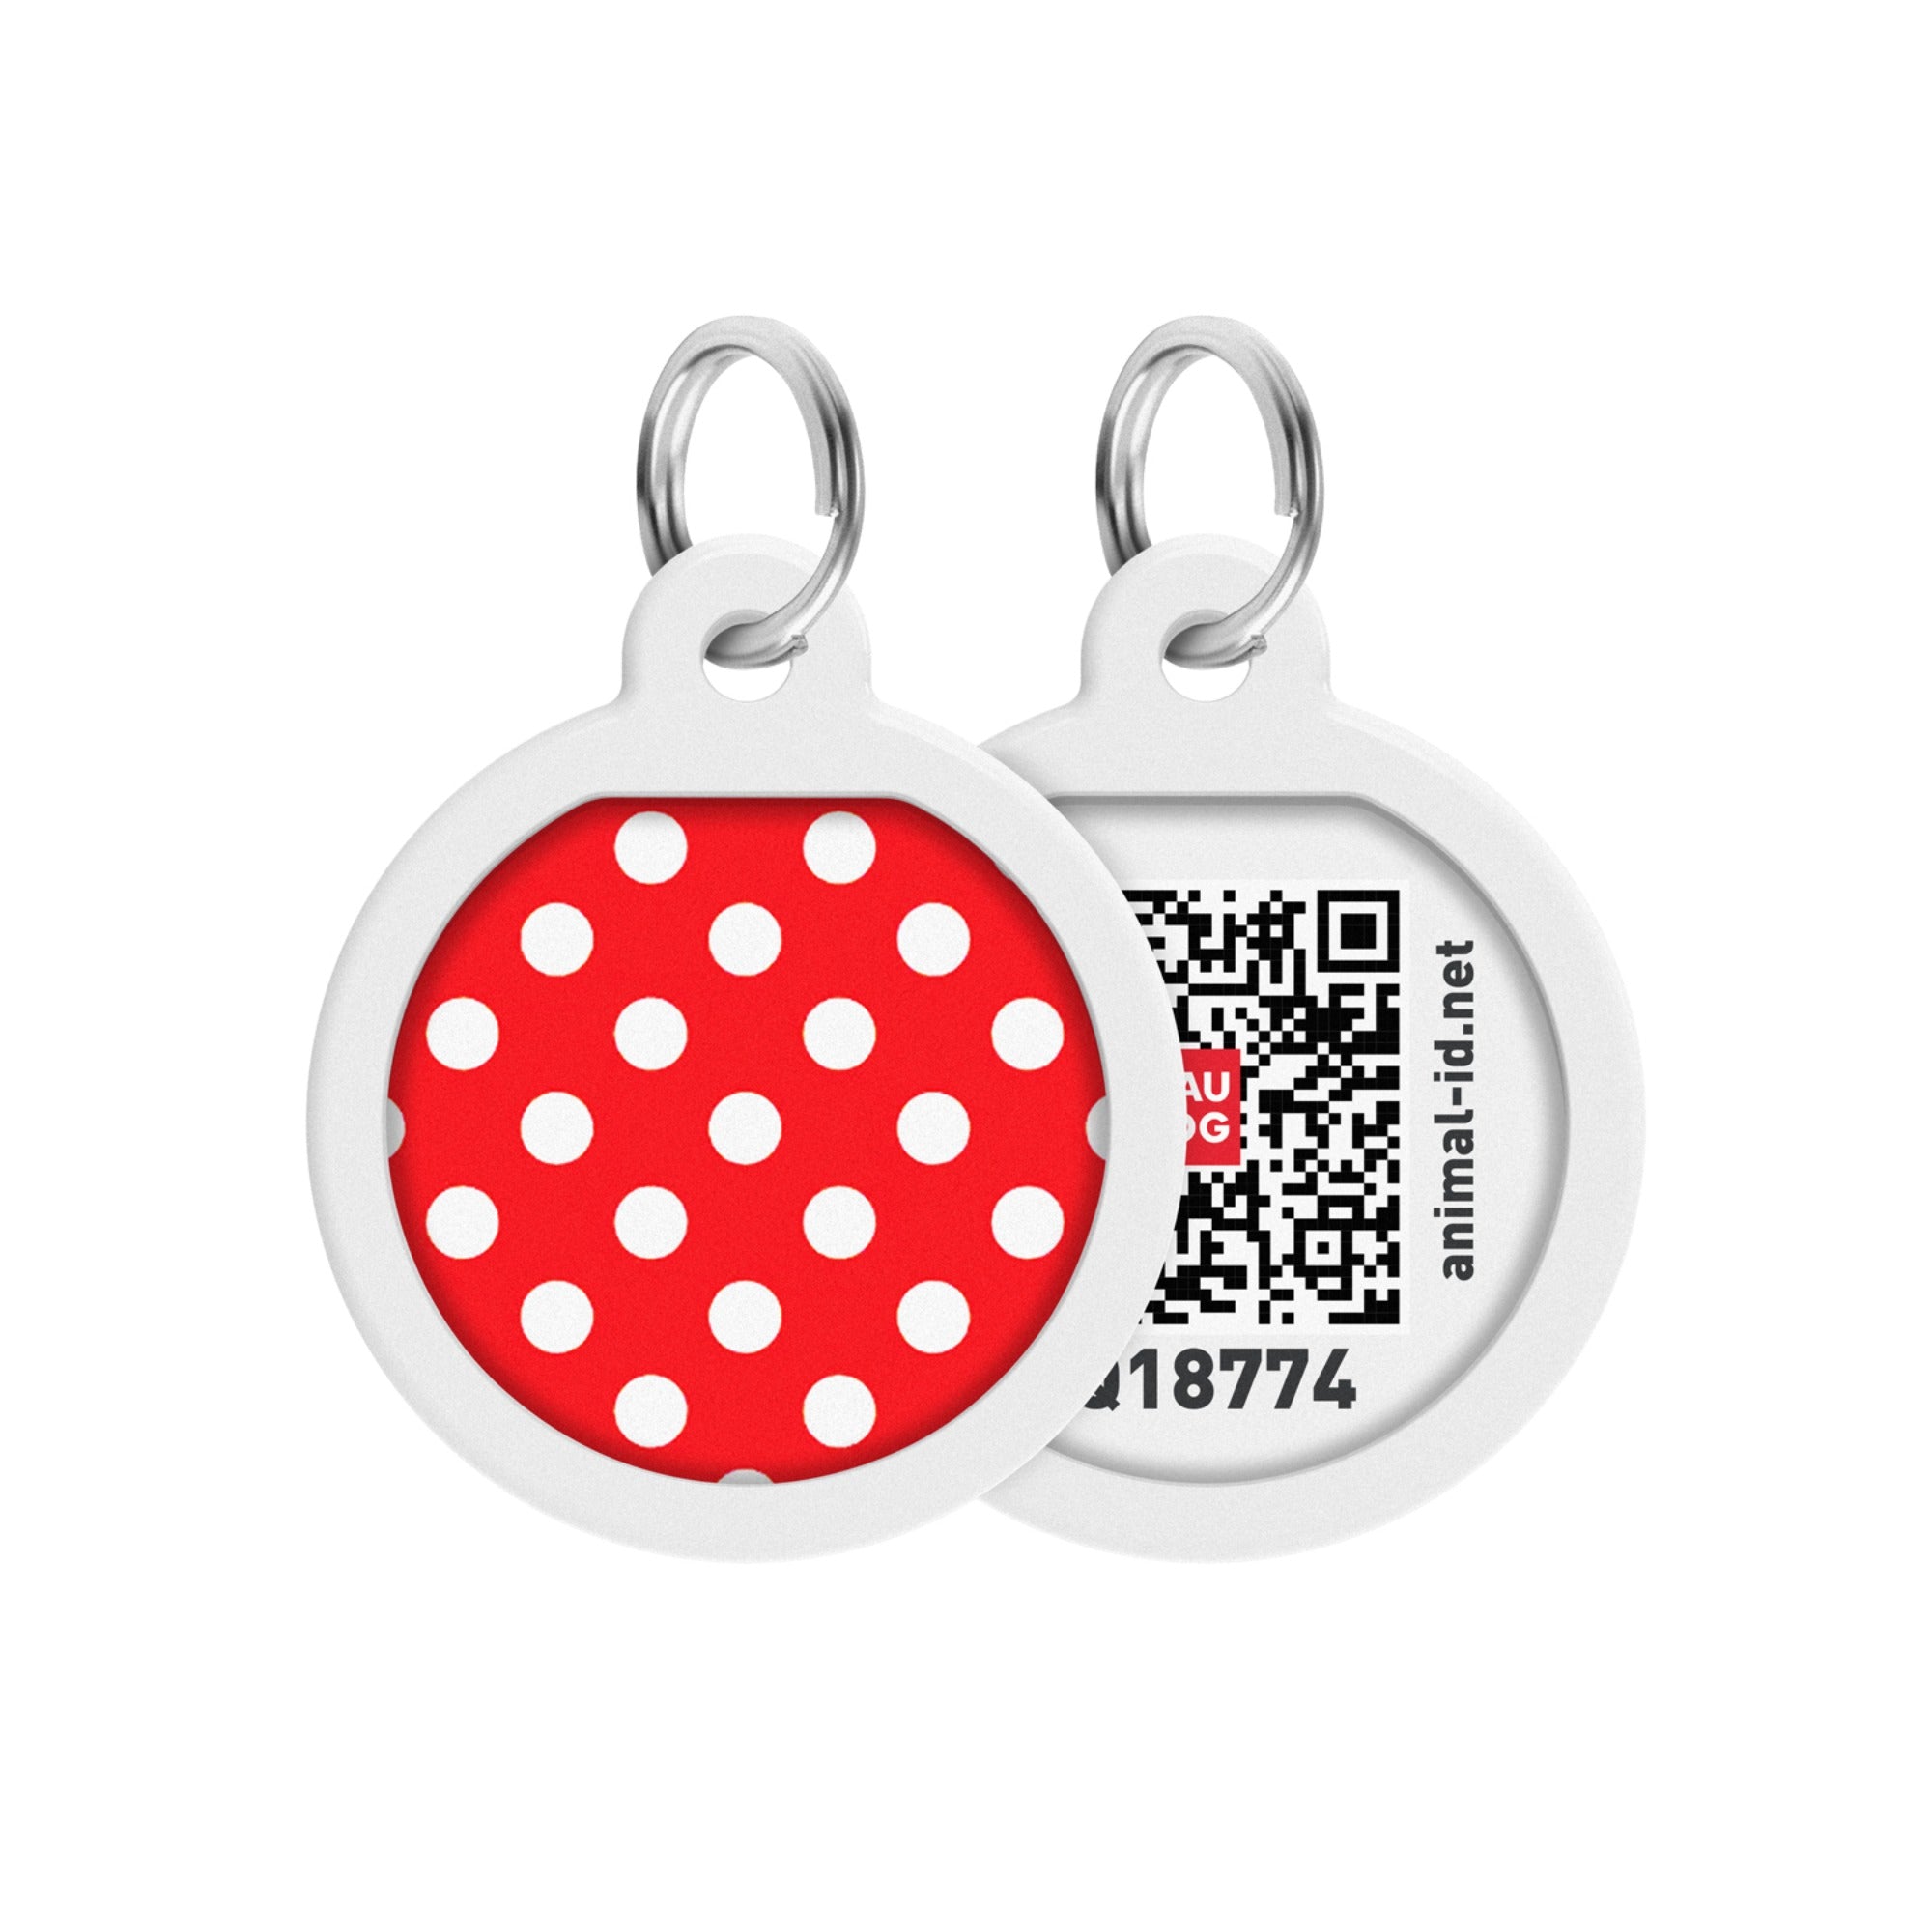 Smart ID Tag - Polka Dots design